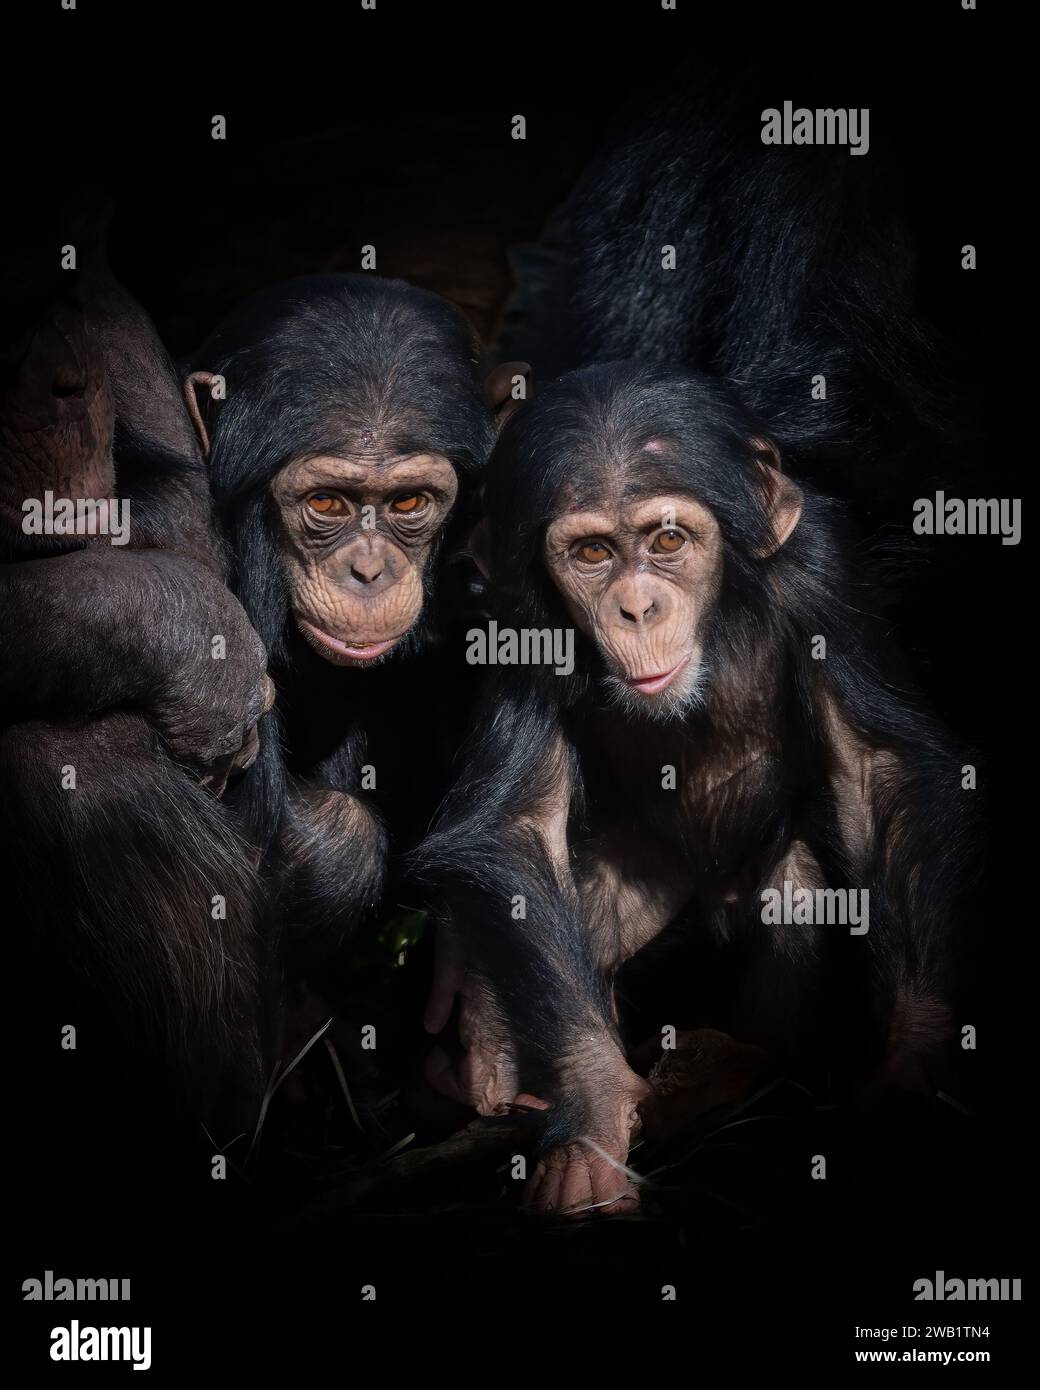 Trois chimpanzés dans un environnement sombre, debout avec leurs mains jointes. Banque D'Images